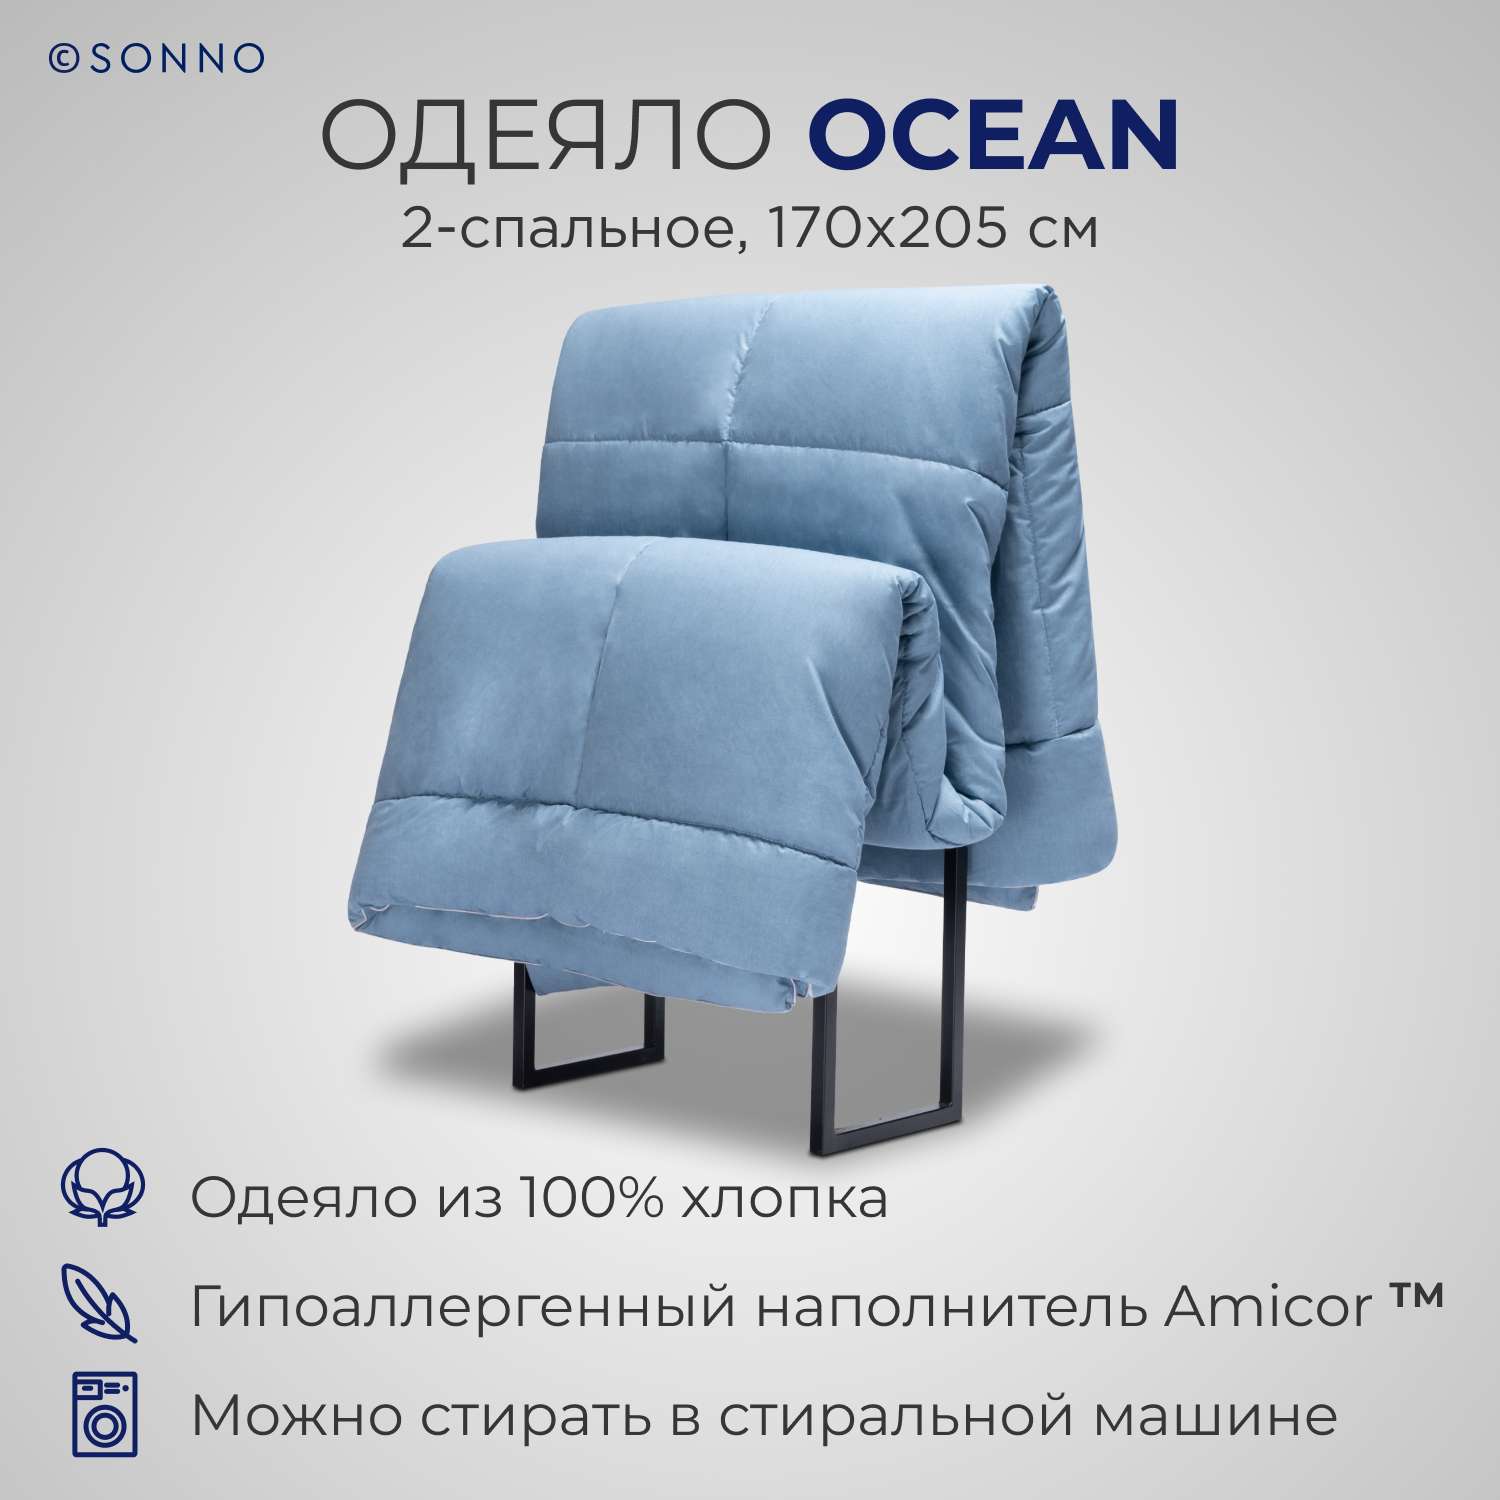 Одеяло SONNO OCEAN 2-спальное 170х205 см цвет океанический голубой - фото 1